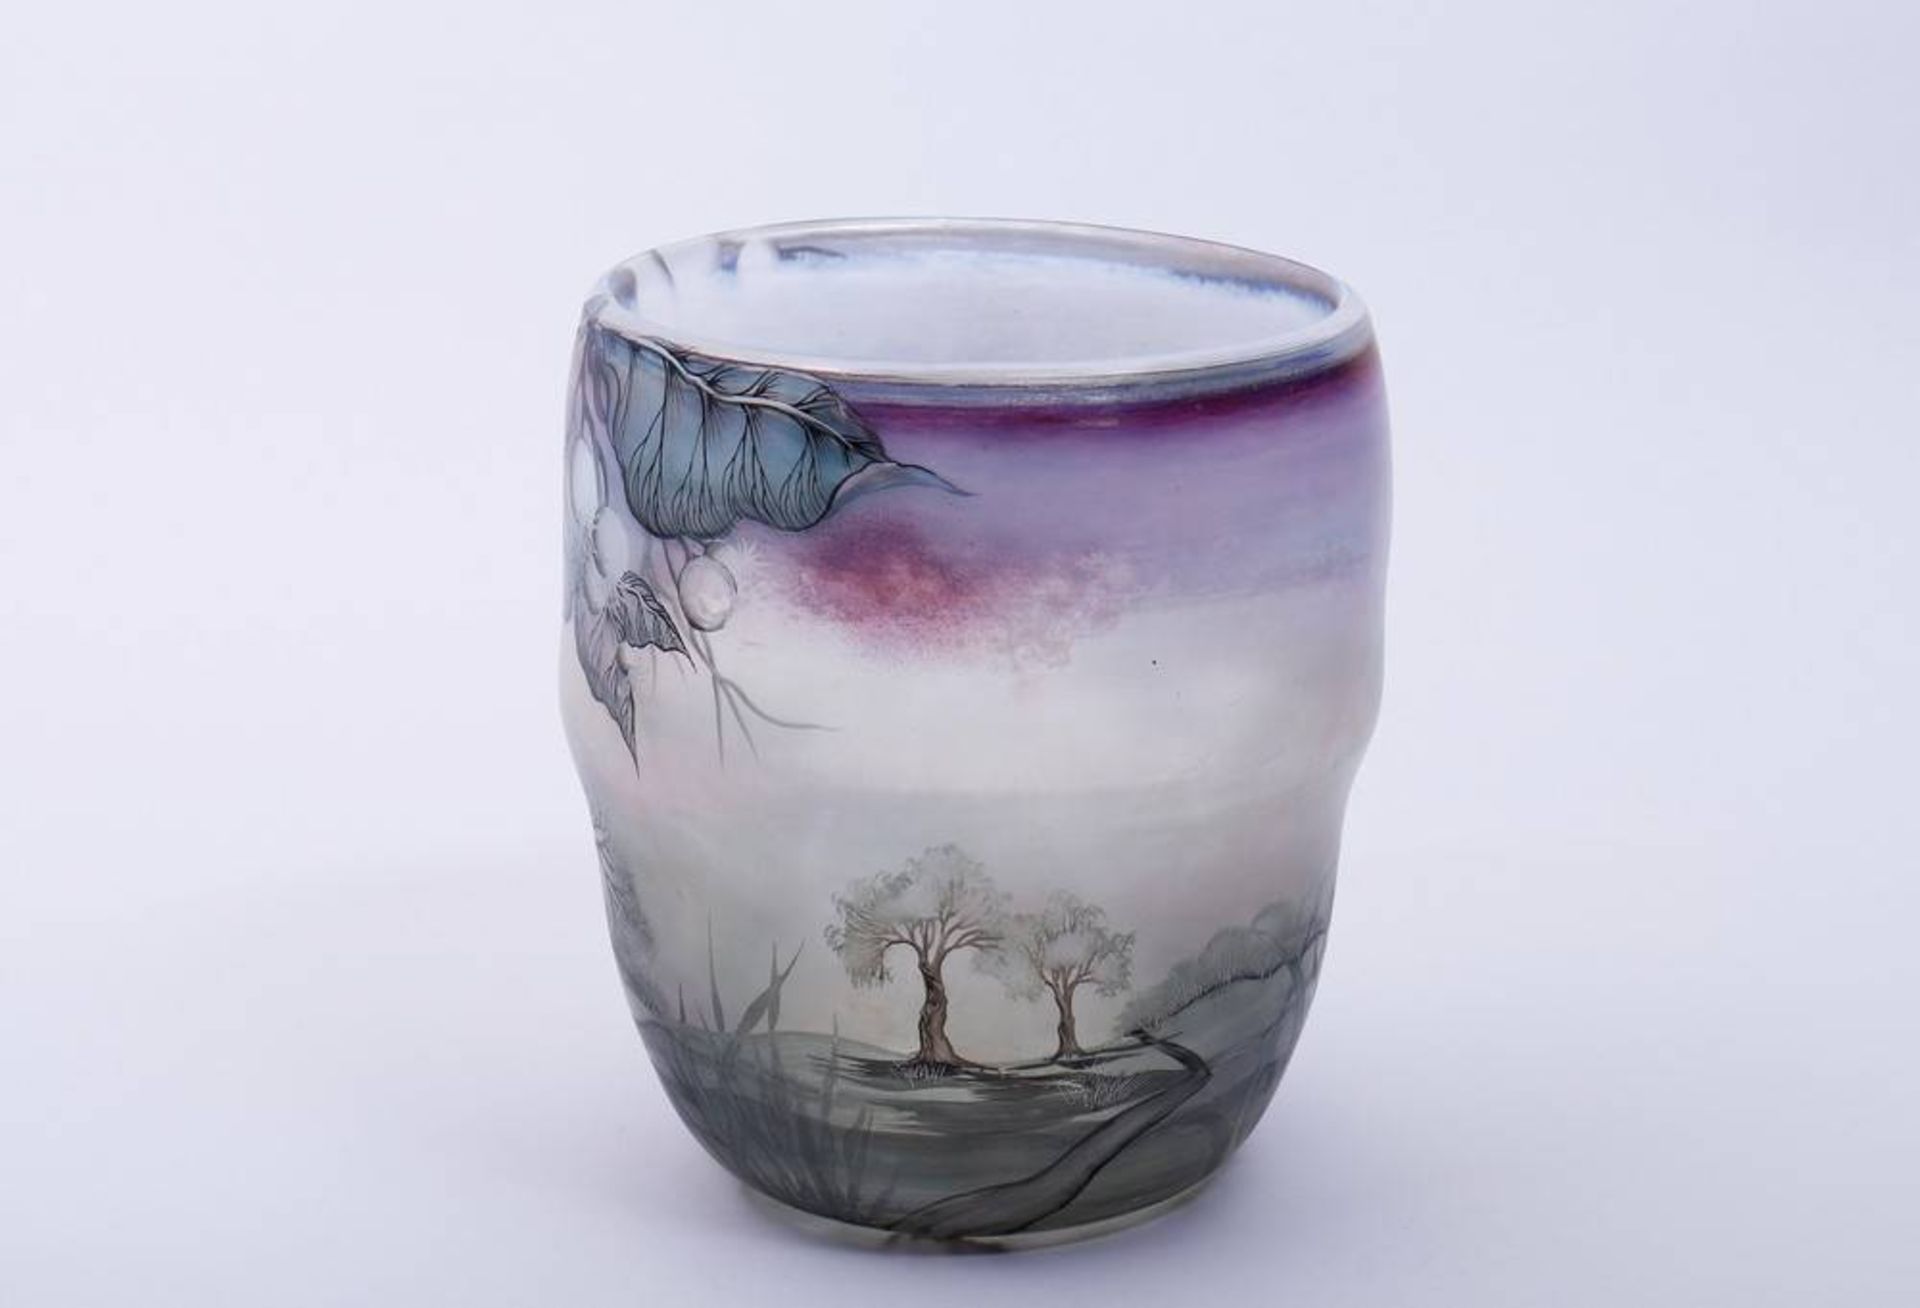 Becher-Vase, Eisch irisierendes Glas mit mattierter Oberfläche, polychrome Bemalung, konisch - Bild 2 aus 5